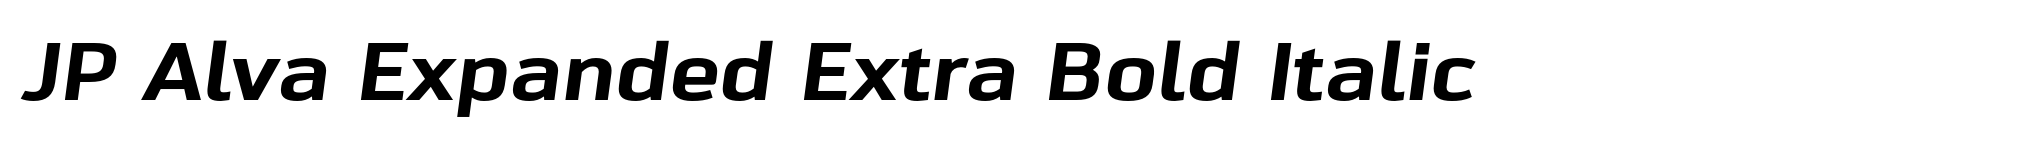 JP Alva Expanded Extra Bold Italic image